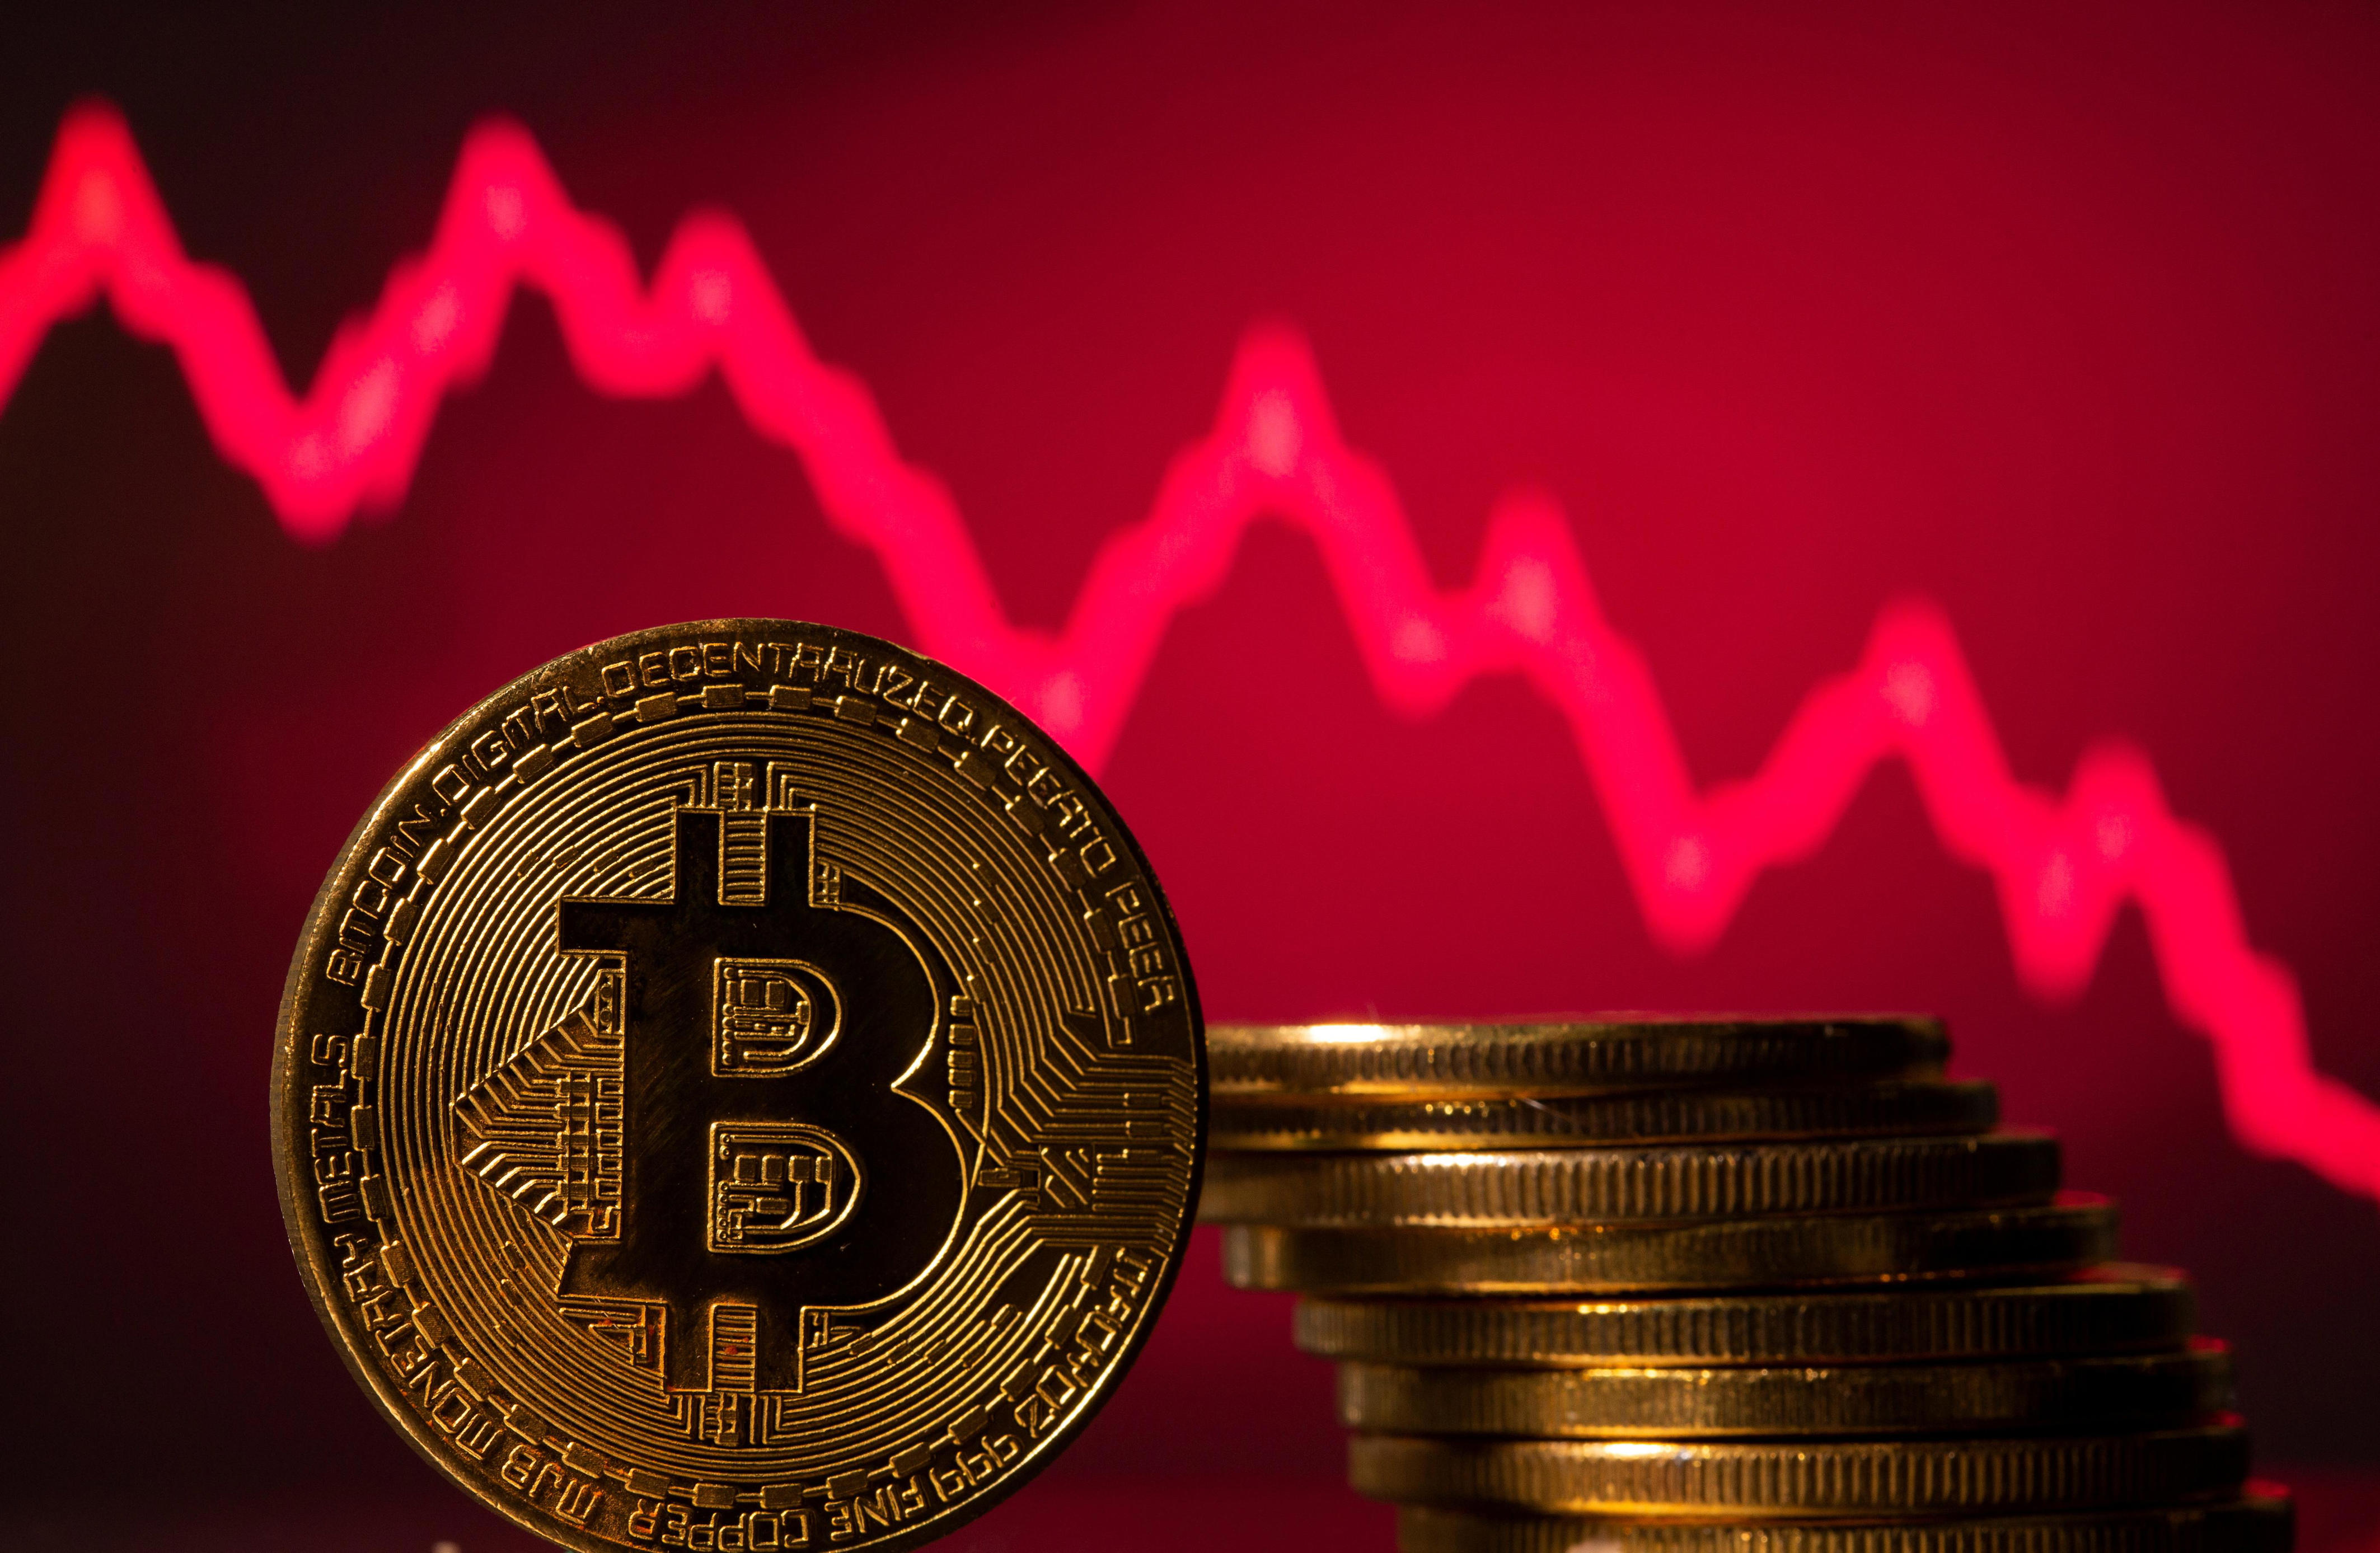 krypto-kurse stürzen ab: bitcoin verliert stark an wert